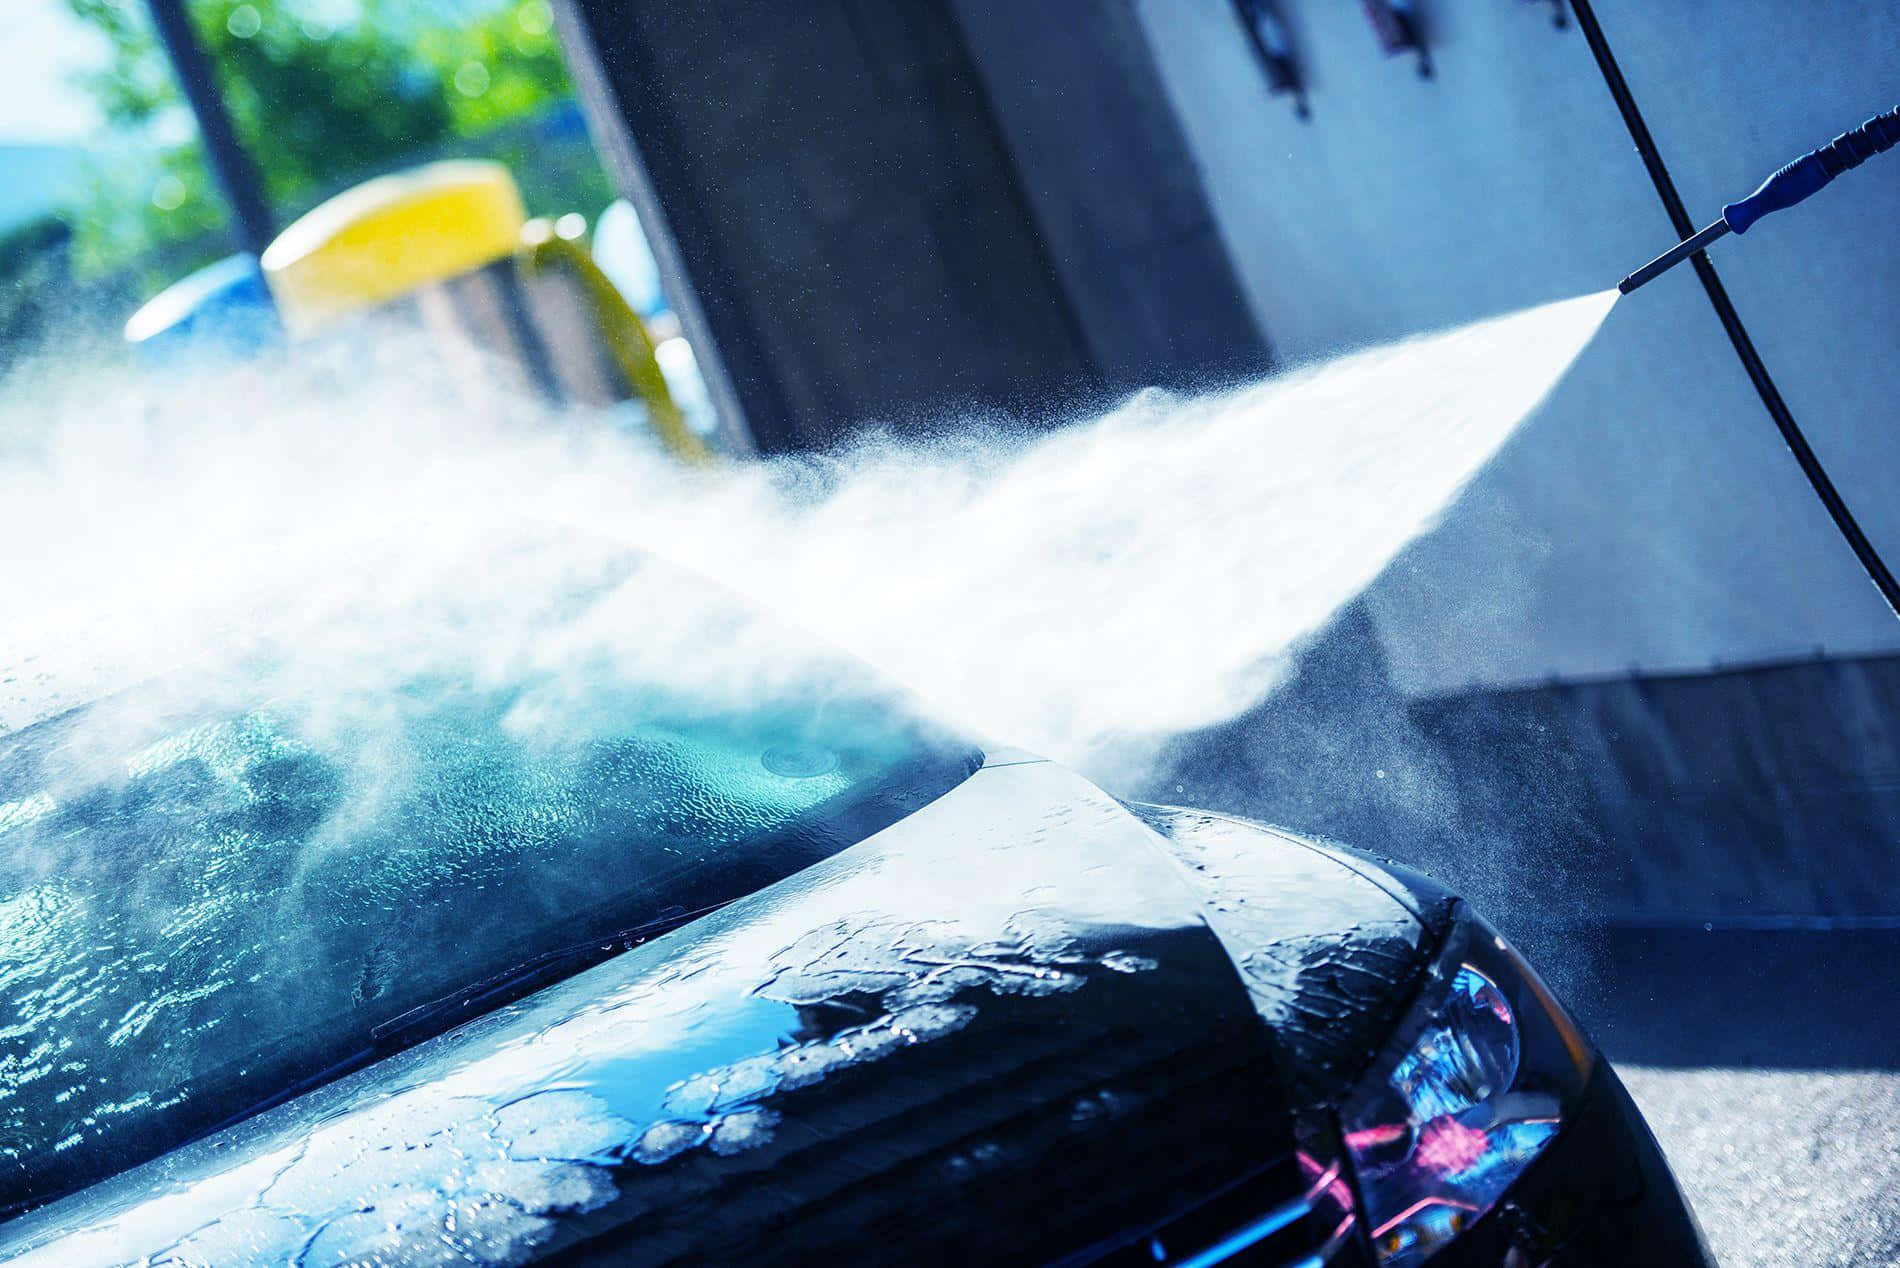 Erhaltensie Den Glanz Ihres Fahrzeugs Mit Qualitativ Hochwertigen Autowaschdienstleistungen.